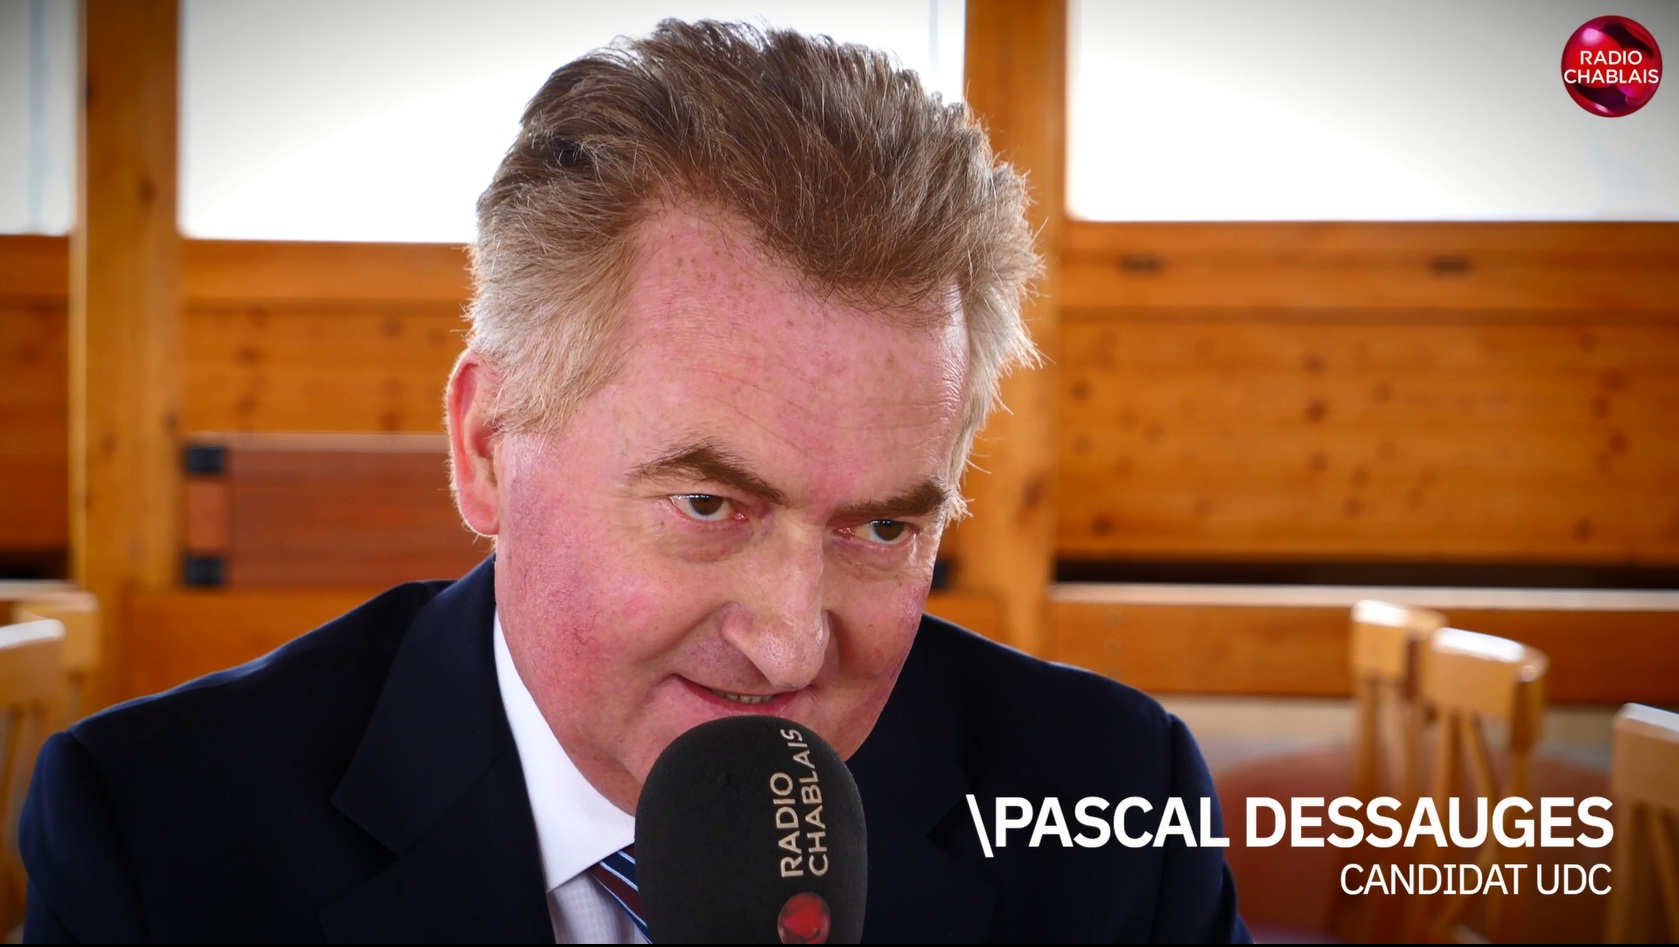 Election complémentaire VD 5/5: Rencontre avec le candidat UDC Pascal Dessauges